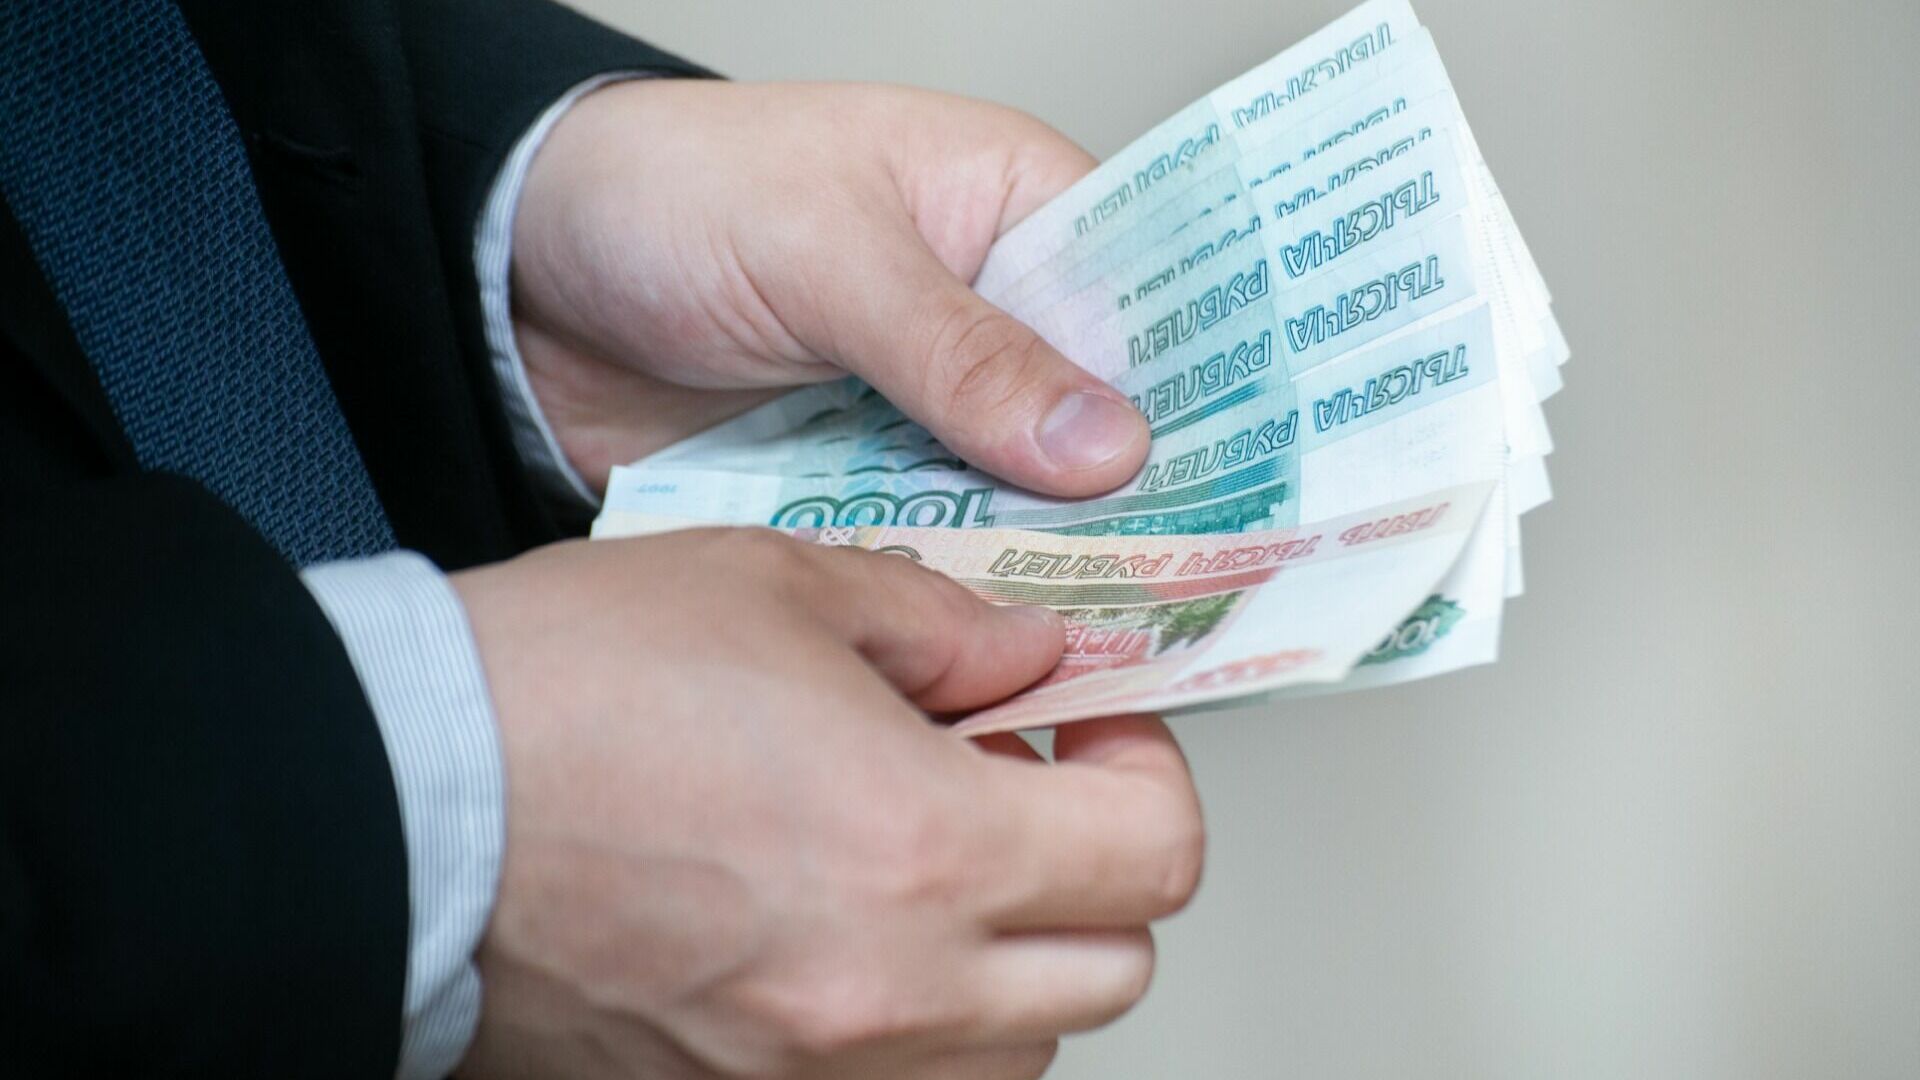 1272 уголовных дела о коррупции завели в Волгоградской области